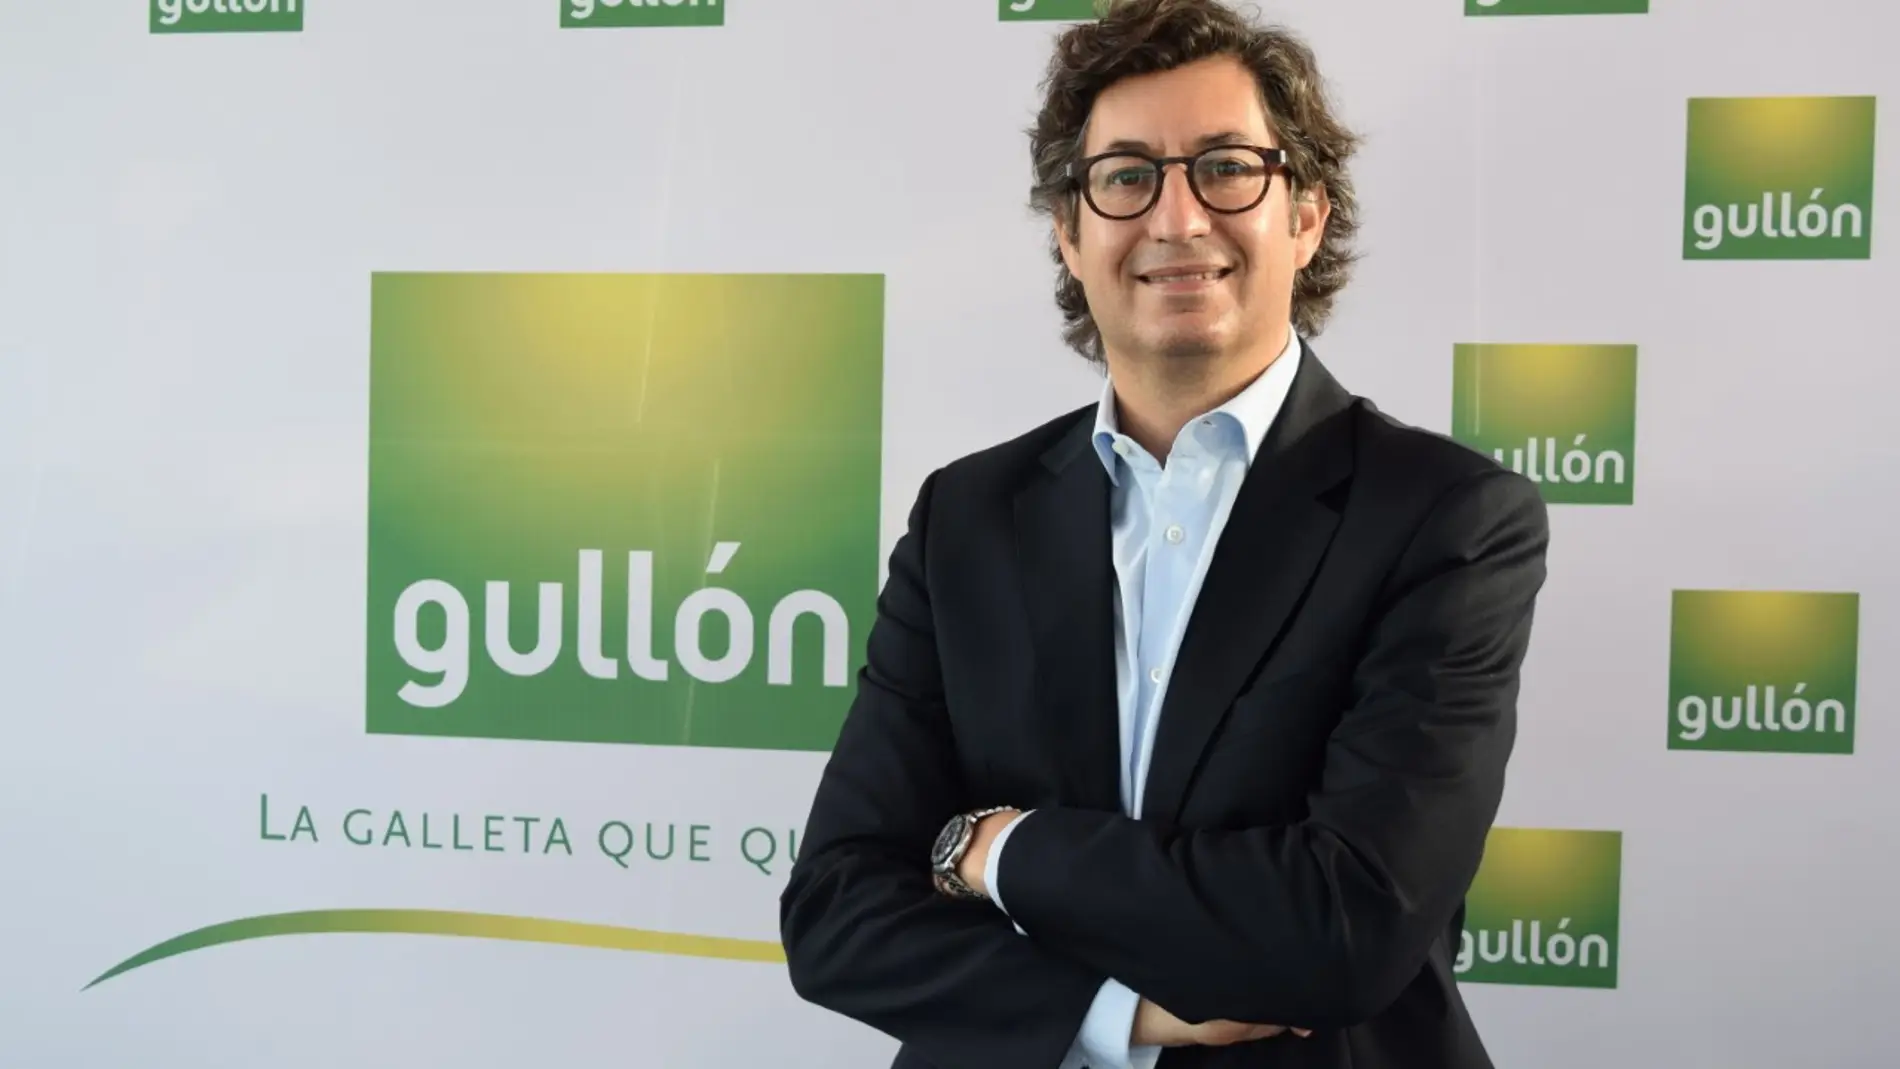 Gullón refuerza una de sus áreas de negocio con la incorporación de Gonzalo Machado como director de Expansión